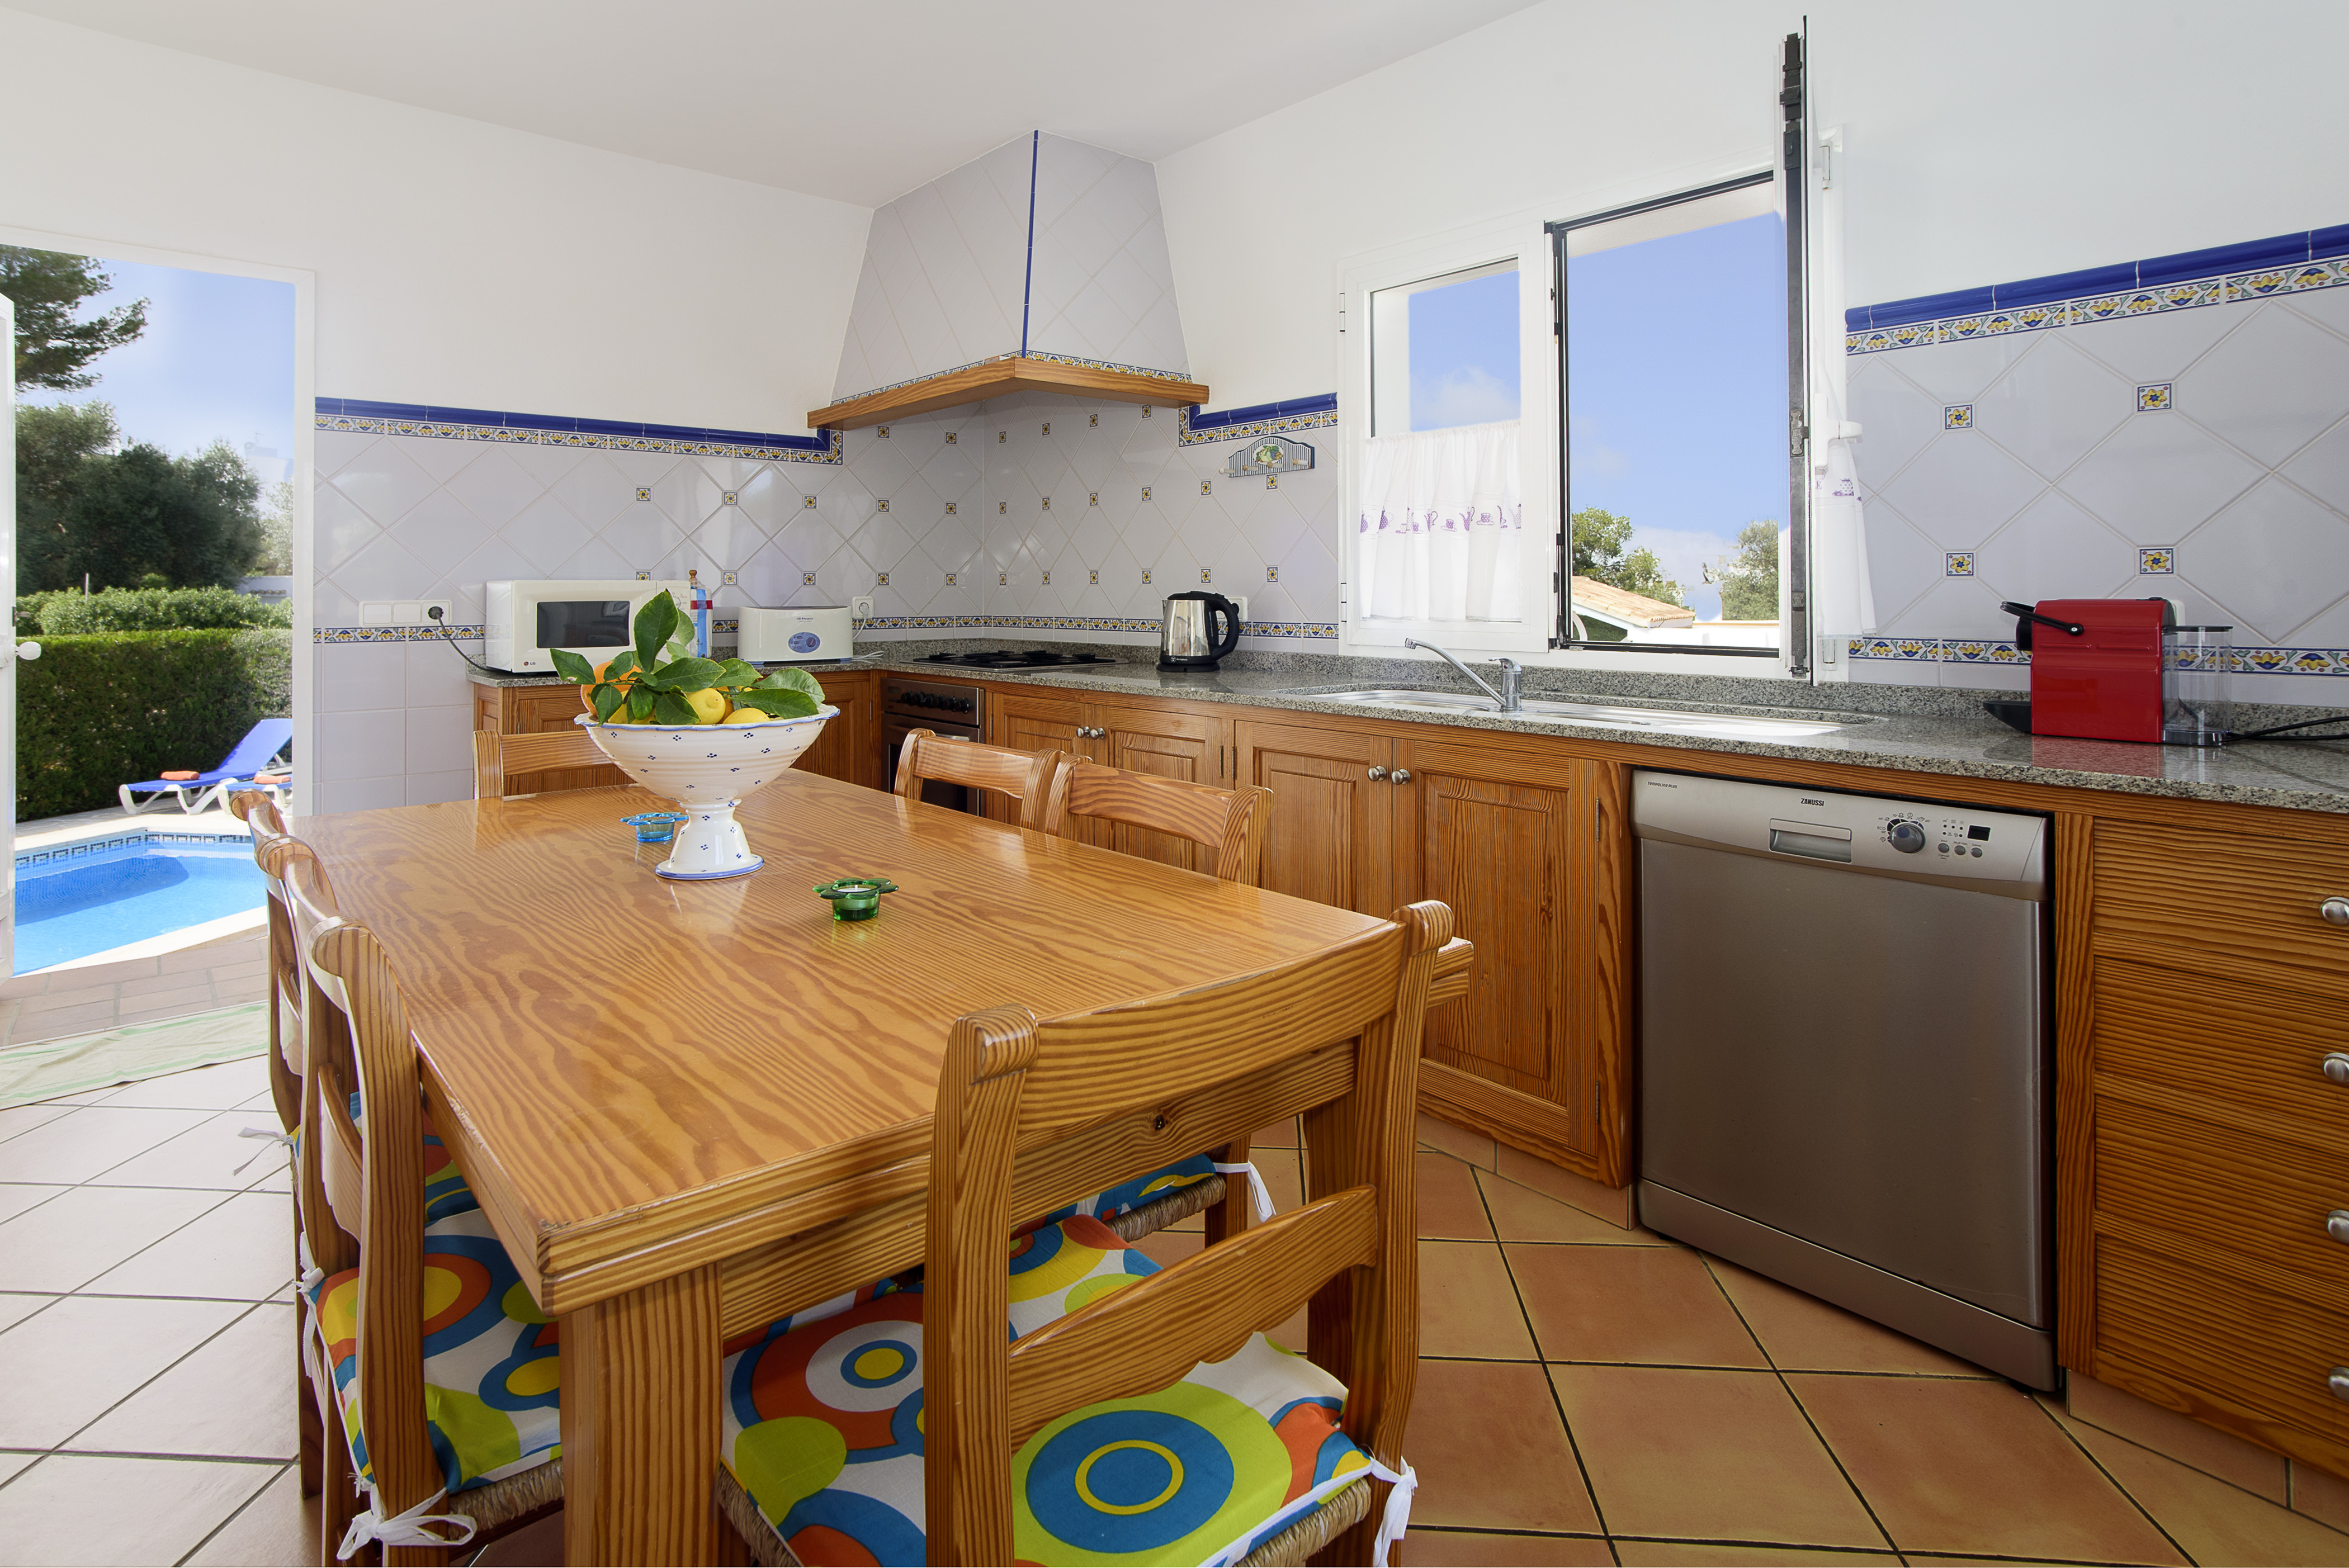 Küche mit Esstisch Ferienvilla Mallorca mit Pool PM 6079